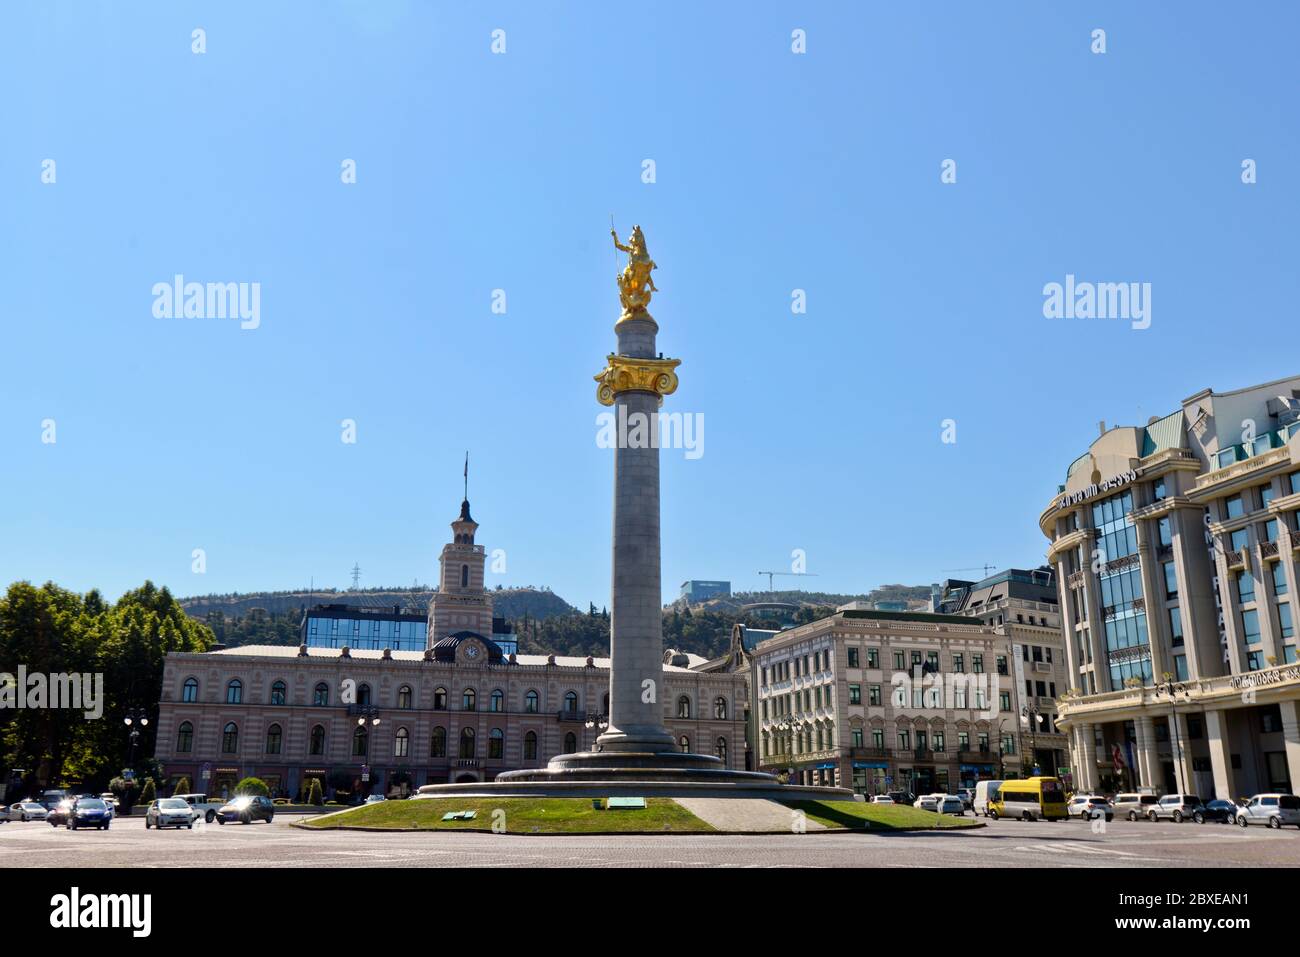 Tbilissi : Place de la liberté, de l'Hôtel de Ville et monument de Saint George. La Géorgie Banque D'Images